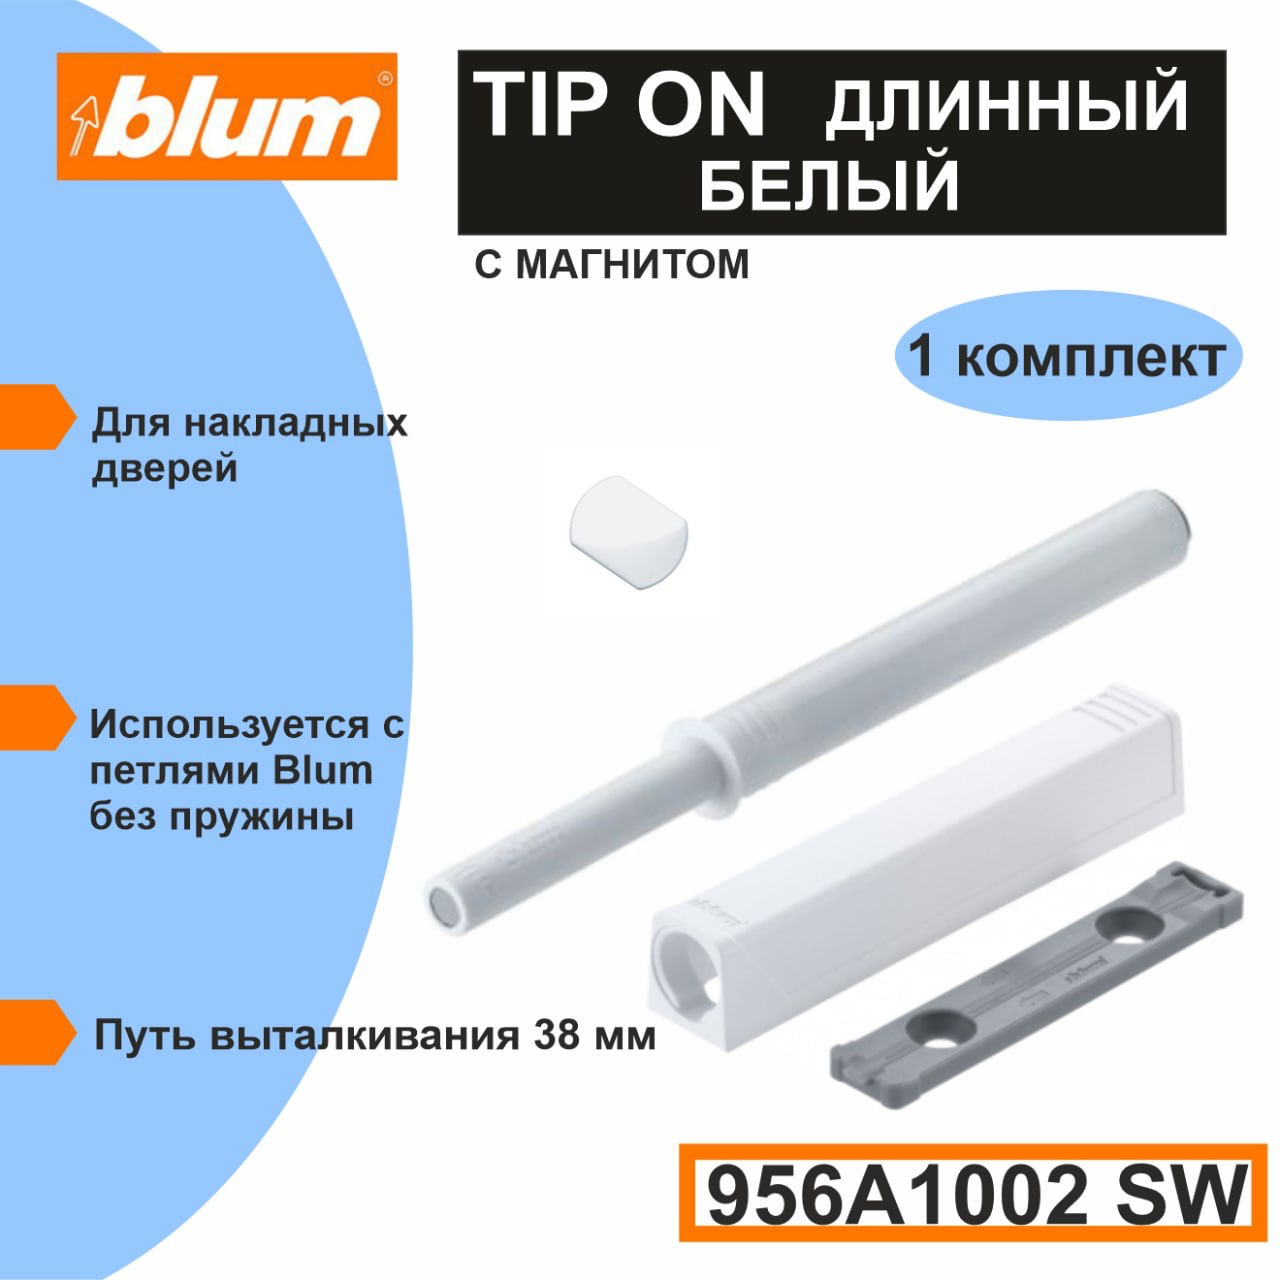 TIP-ON Blum 956A1002SW - толкатель фасада (Push-to-open) длинный белый в комплекте с держателем и пластиной на клею - 1 комплект